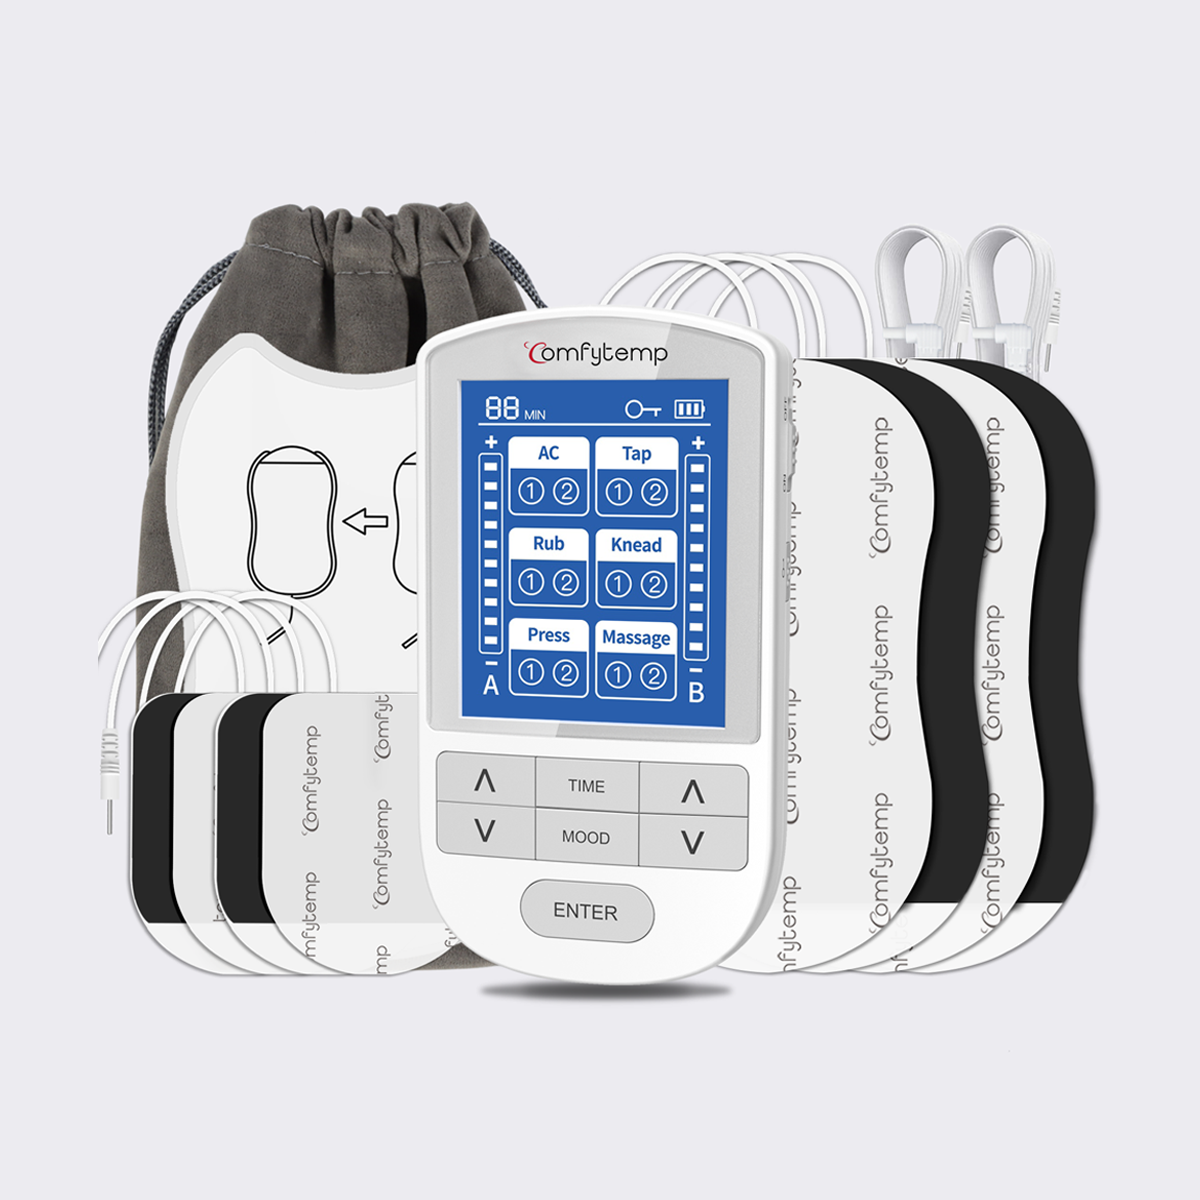 TENS Unit Muscle Stimulator for Pain Management - Comfytemp